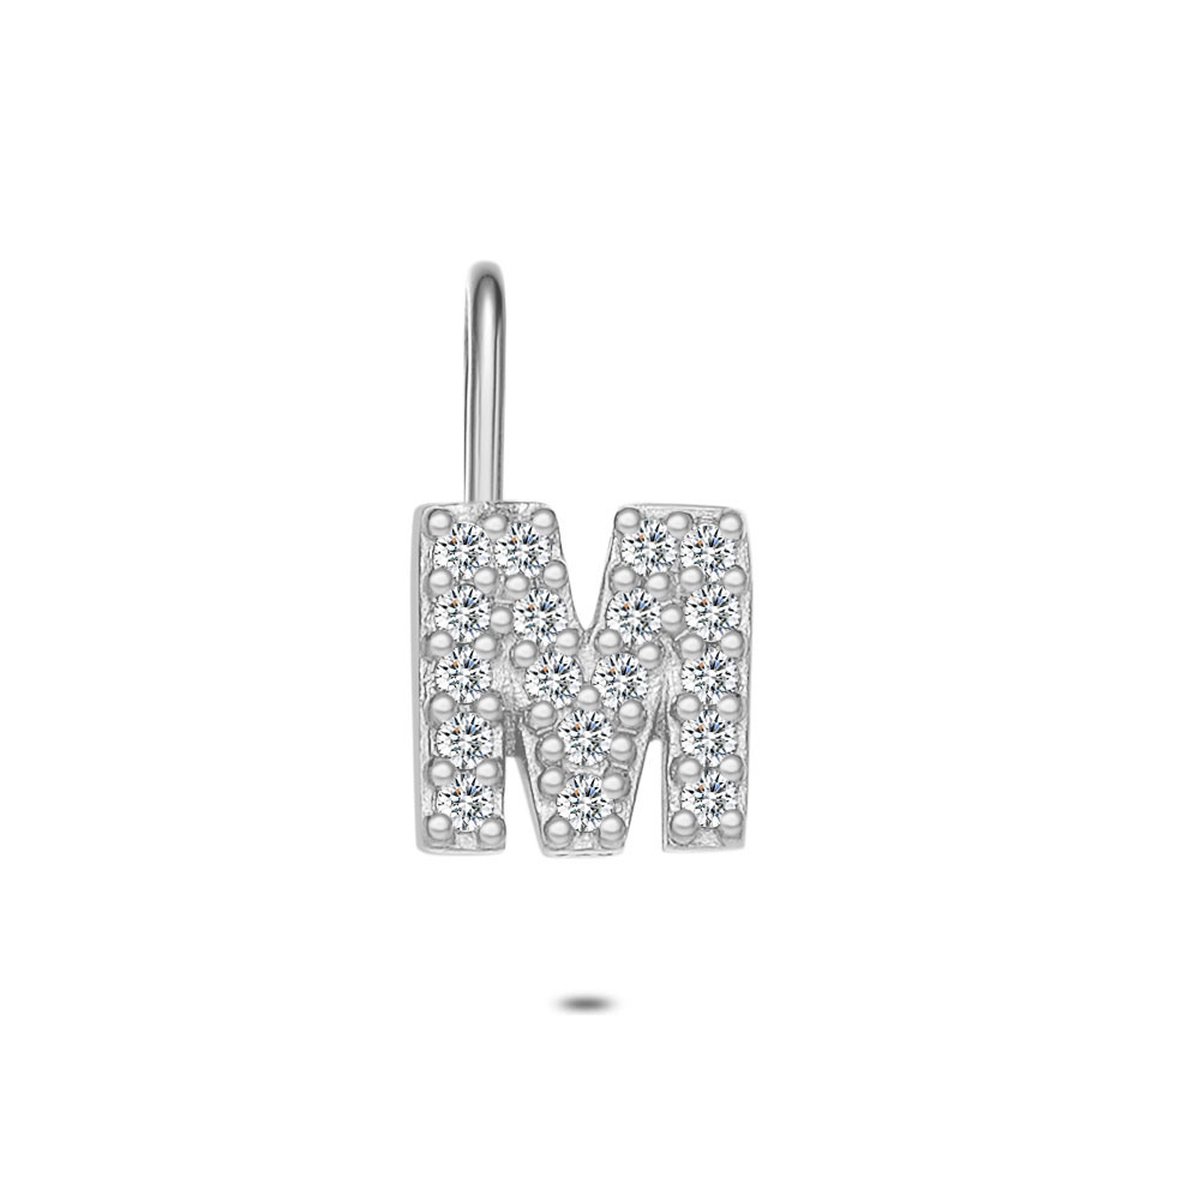 Twice As Nice Hanger in zilver, letter M met steentjes